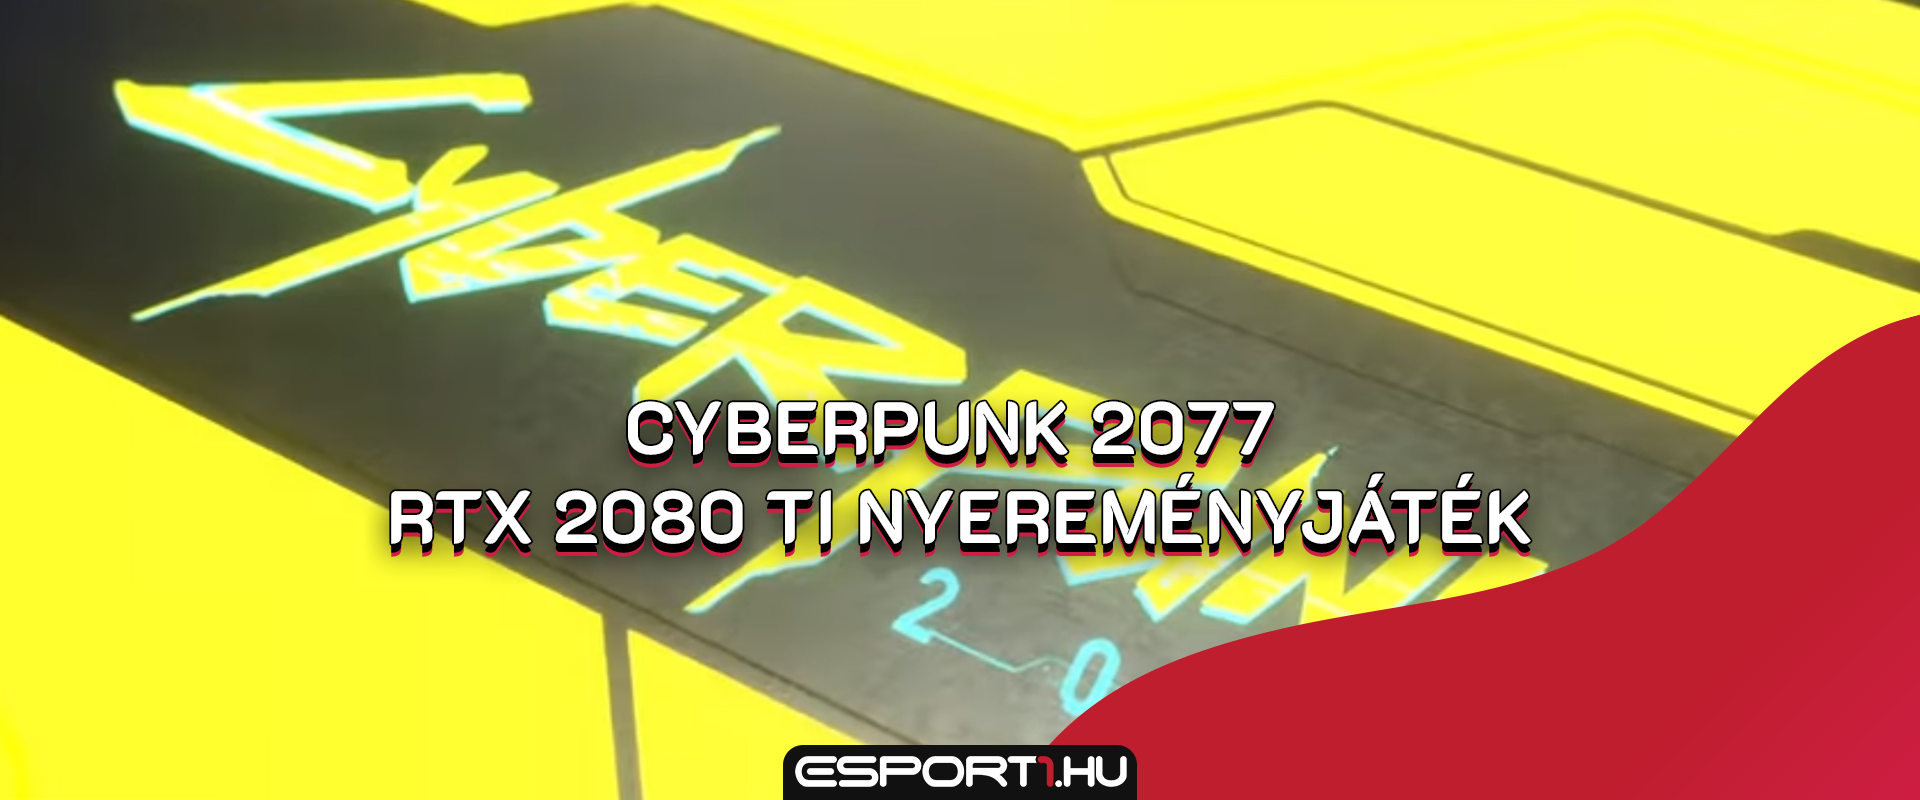 Megnyerhető, de nem megvásárolható a brutálisan gyors Cyberpunk 2077 videokártya